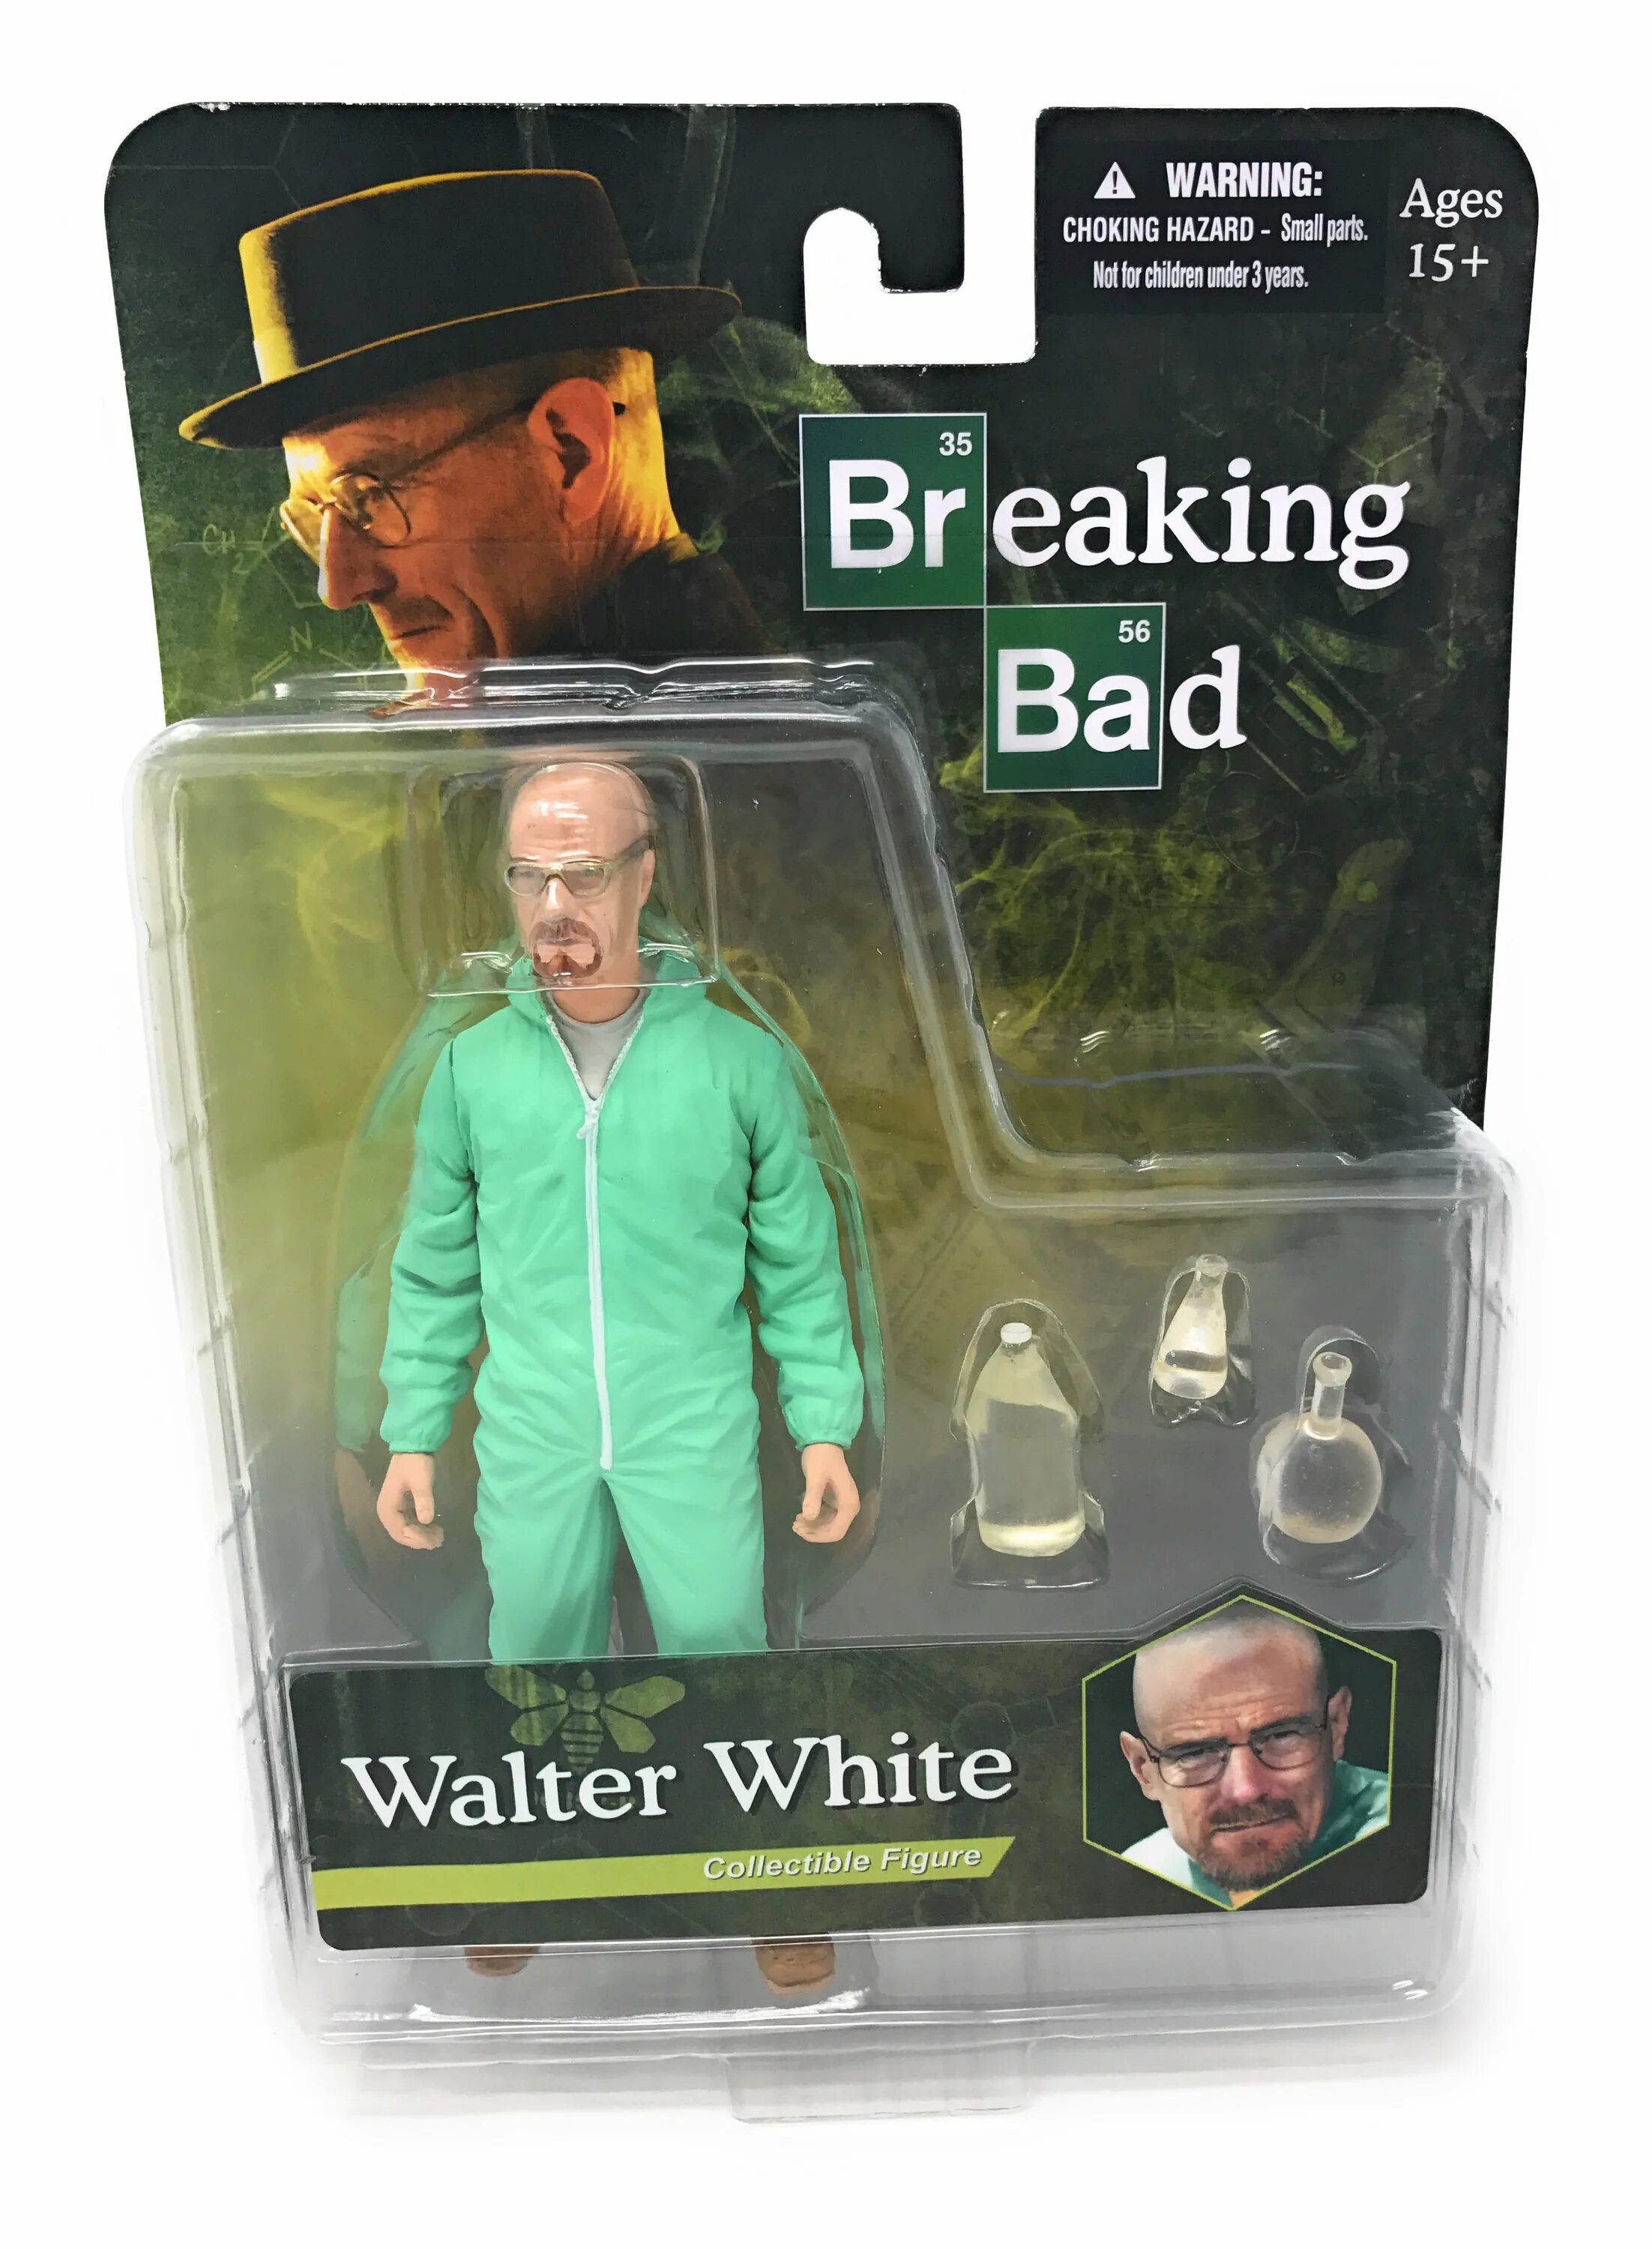 Фигурка Mezco Breaking Bad. Breaking Bad игрушка. Walter White Heisenberg Figure. Плюшевая игрушка Уолтера Уайта.